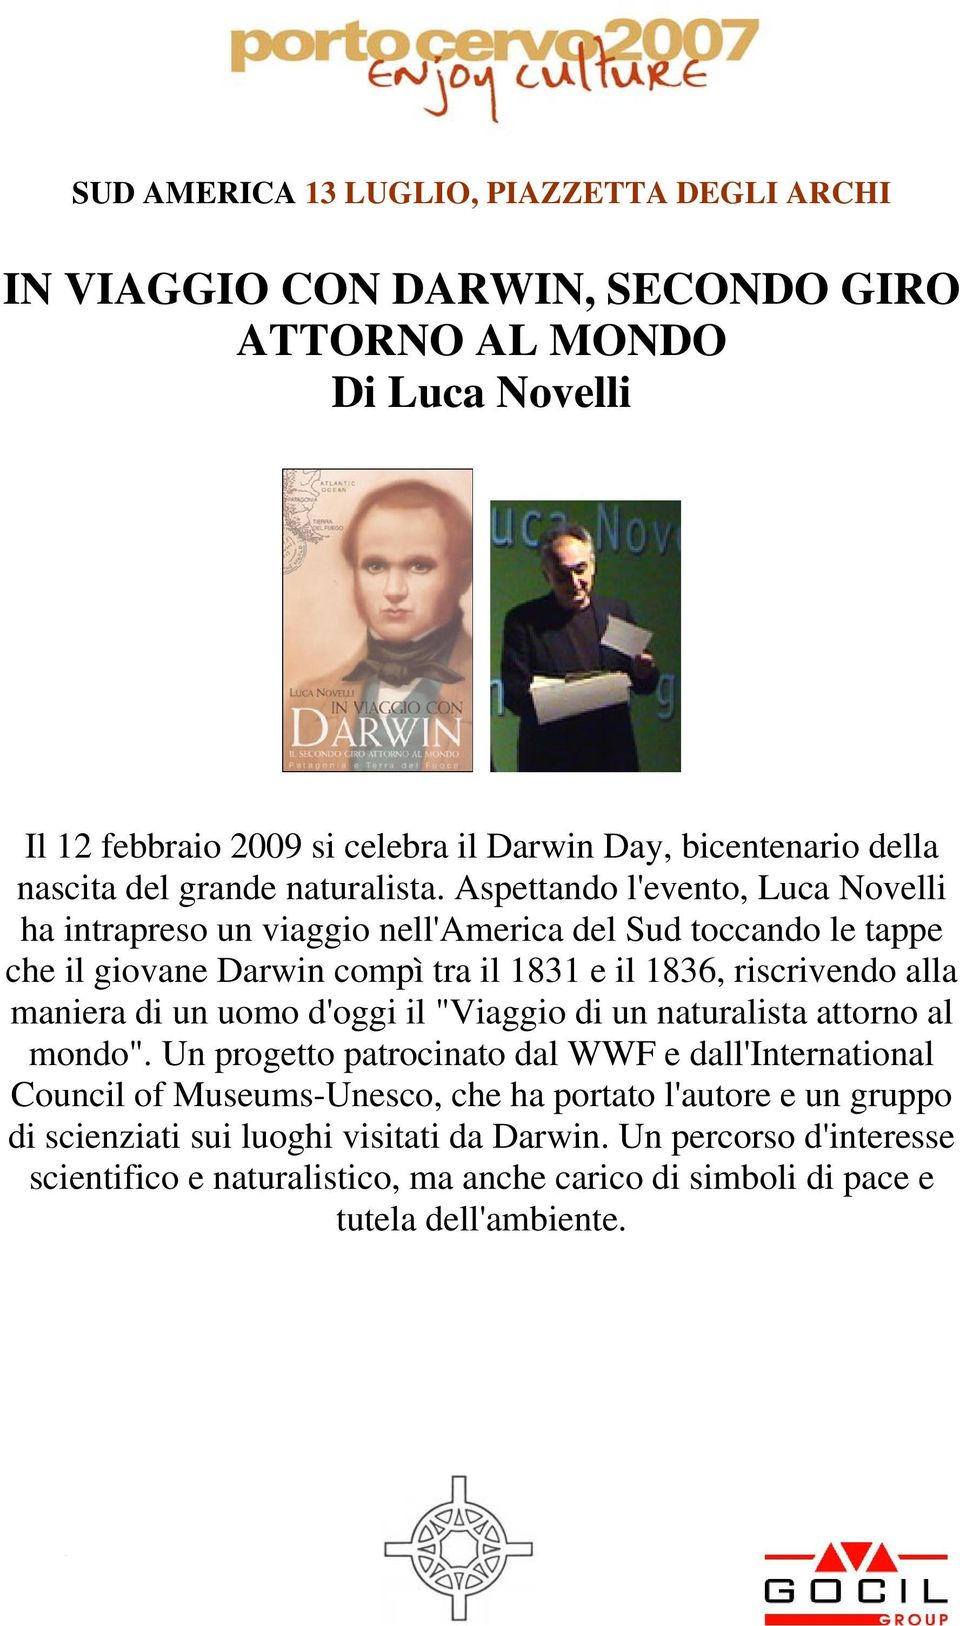 Aspettando l'evento, Luca Novelli ha intrapreso un viaggio nell'america del Sud toccando le tappe che il giovane Darwin compì tra il 1831 e il 1836, riscrivendo alla maniera di un